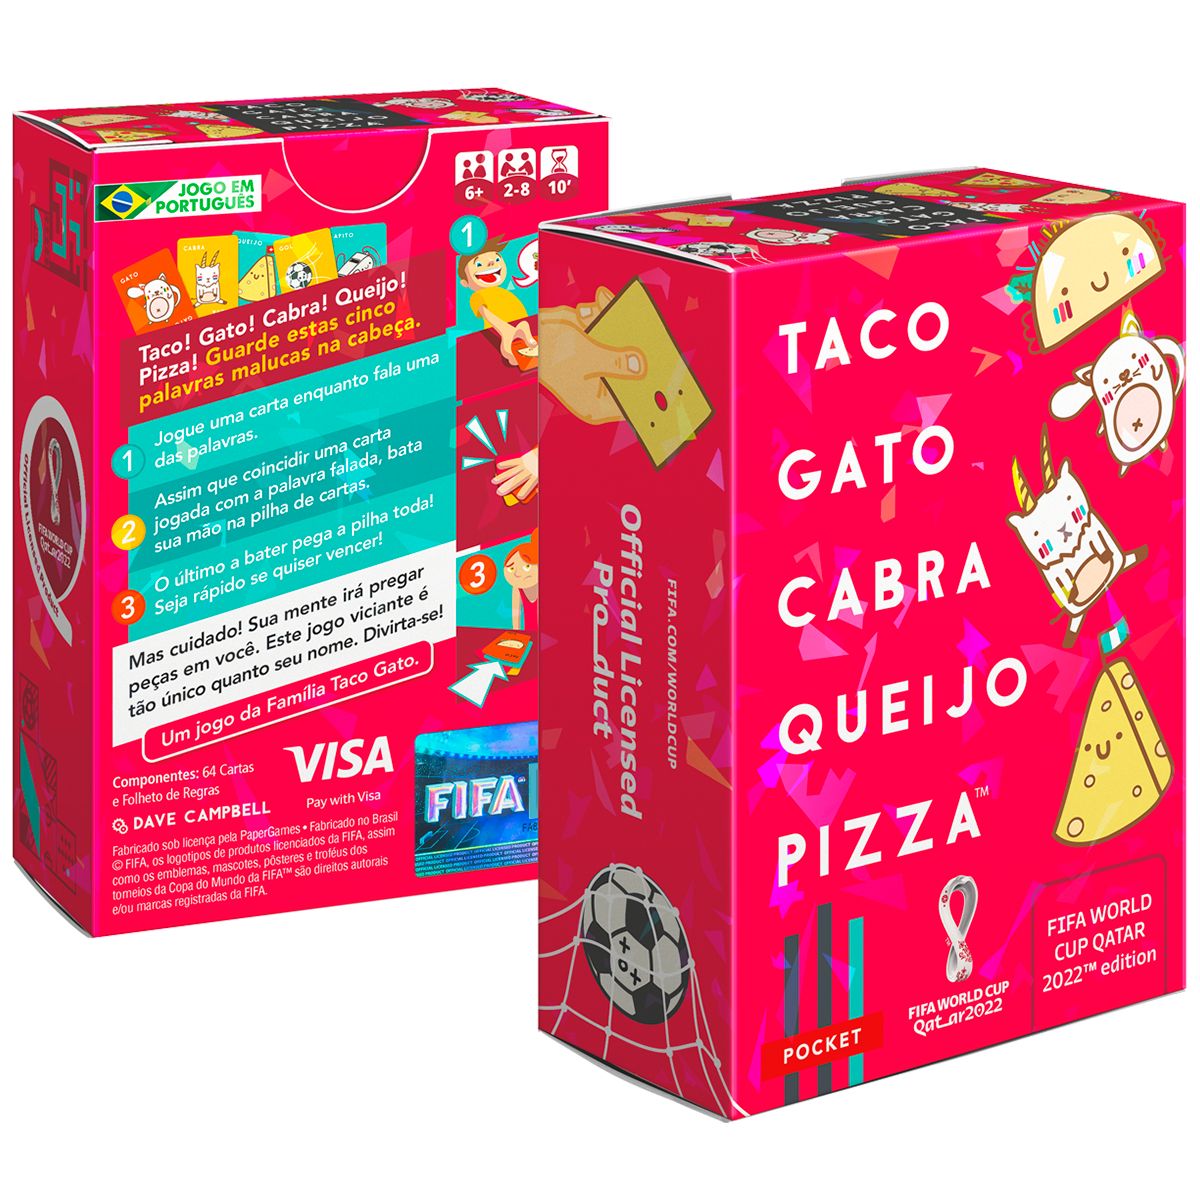 Taco Gato Cabra Queijo Pizza FIFA World Cup Qatar 2022 Edition